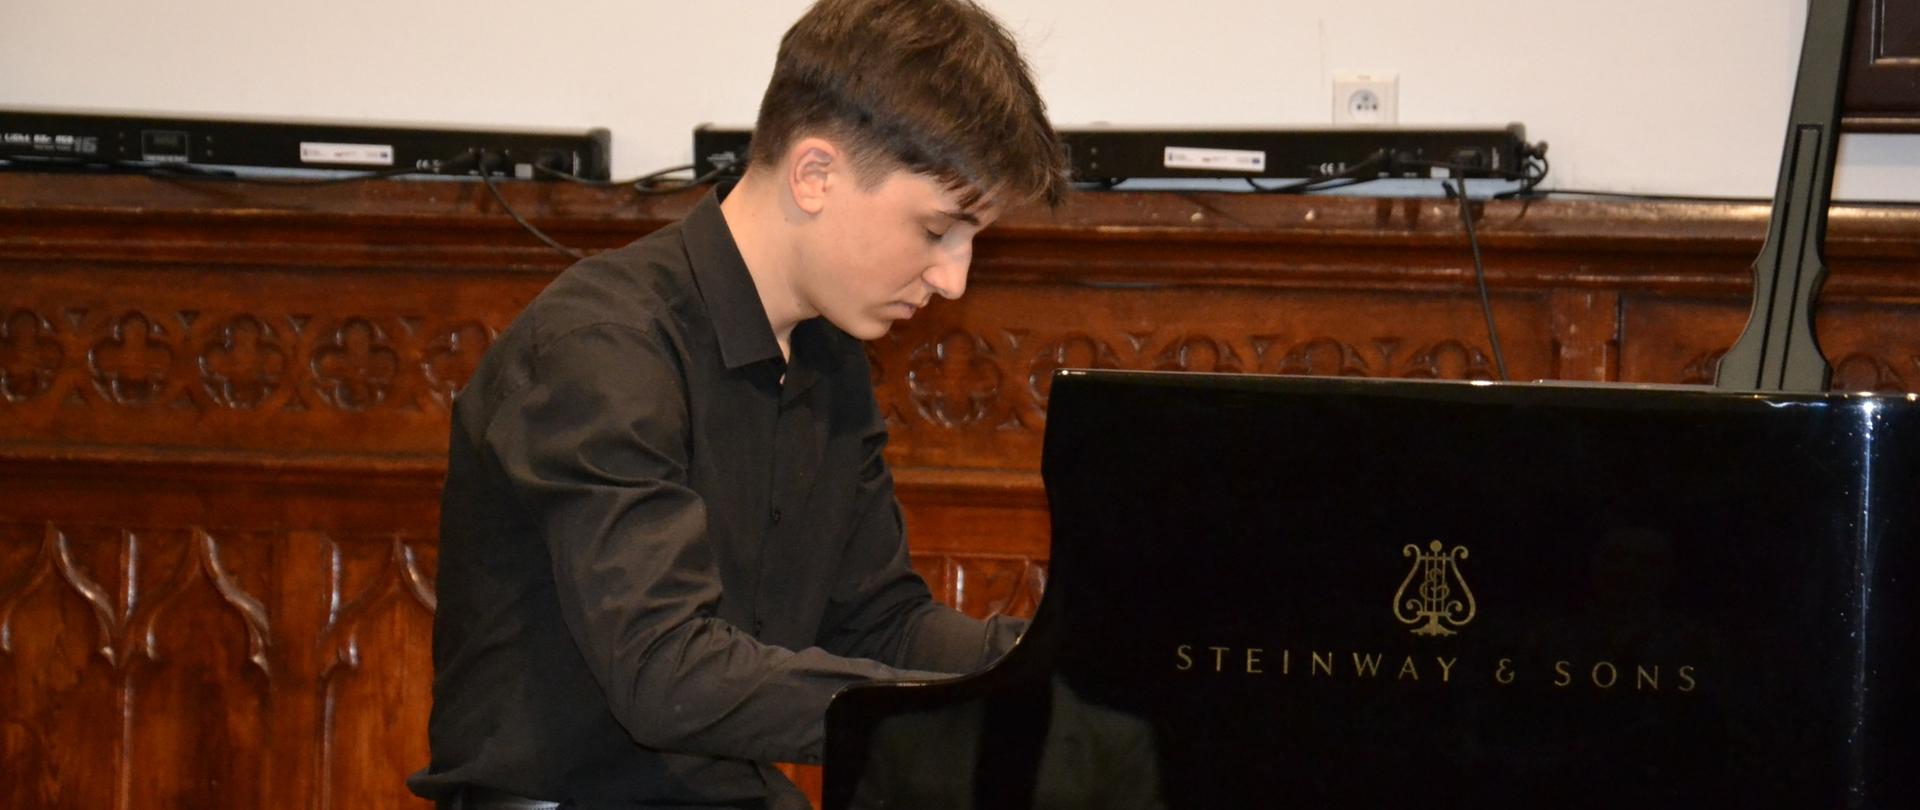 Juliusz Łukasik grający na fortepianie marki Steinway w Sali Królewskiej podczas recitalu fortepianowego